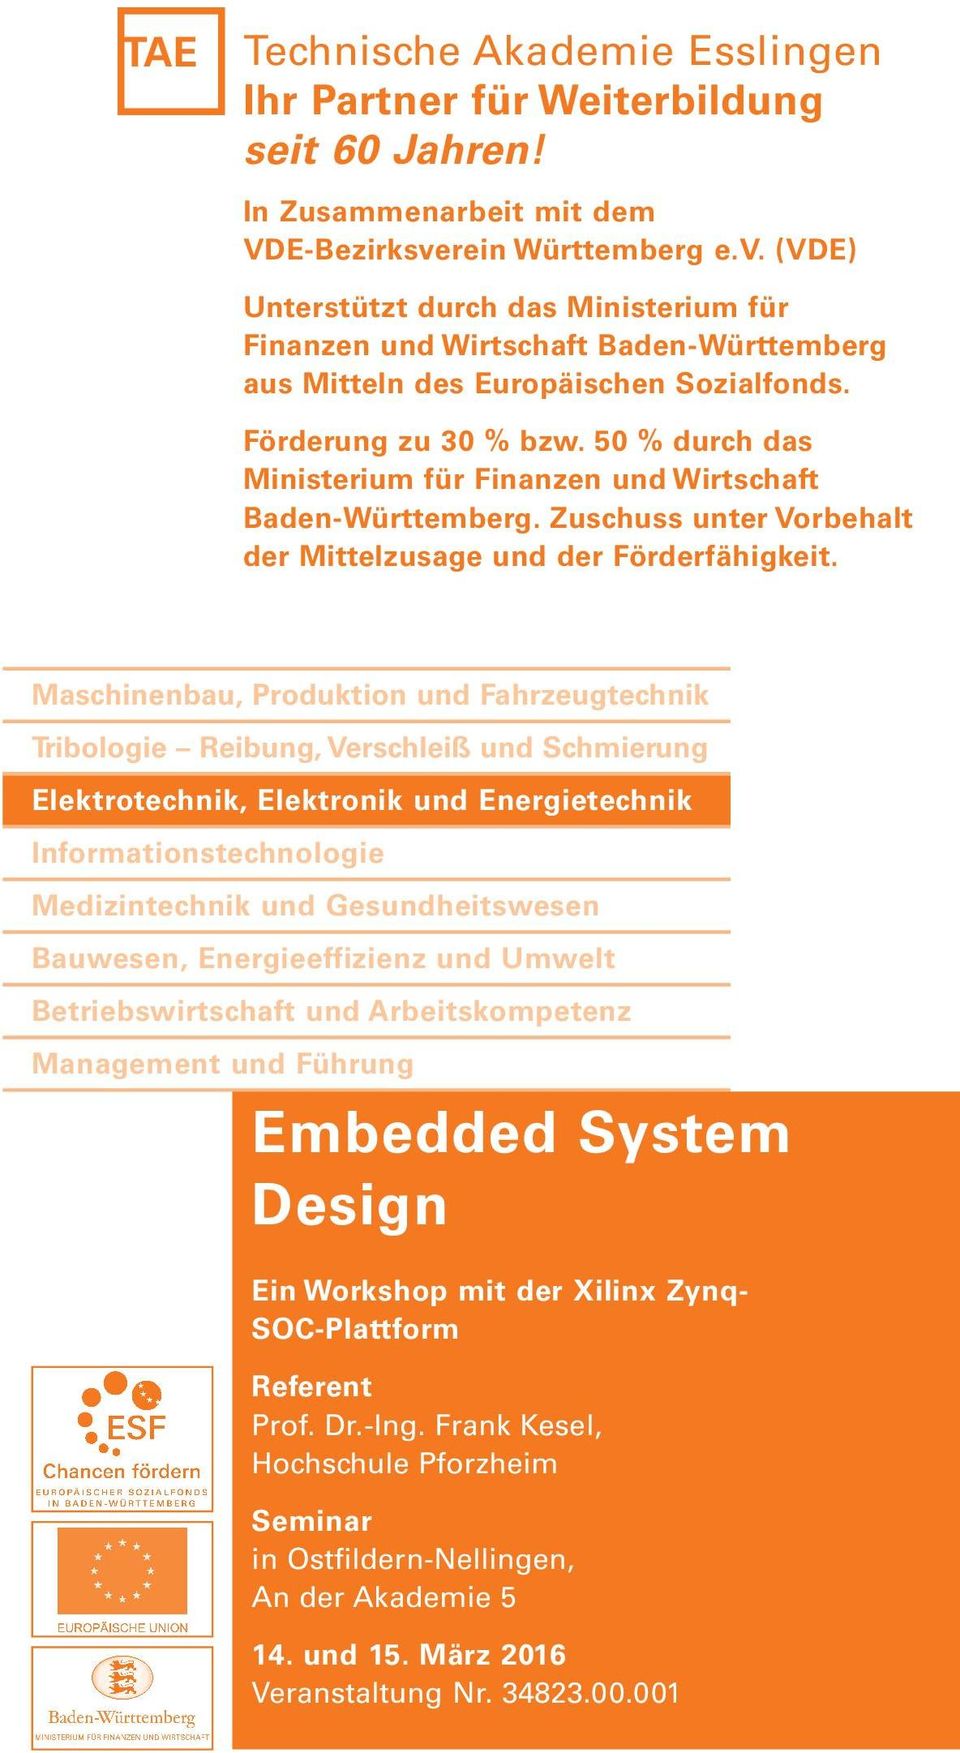 50 % durch das Ministerium für Finanzen und Wirtschaft Baden-Württemberg. Zuschuss unter Vorbehalt der Mittelzusage und der Förderfähigkeit.